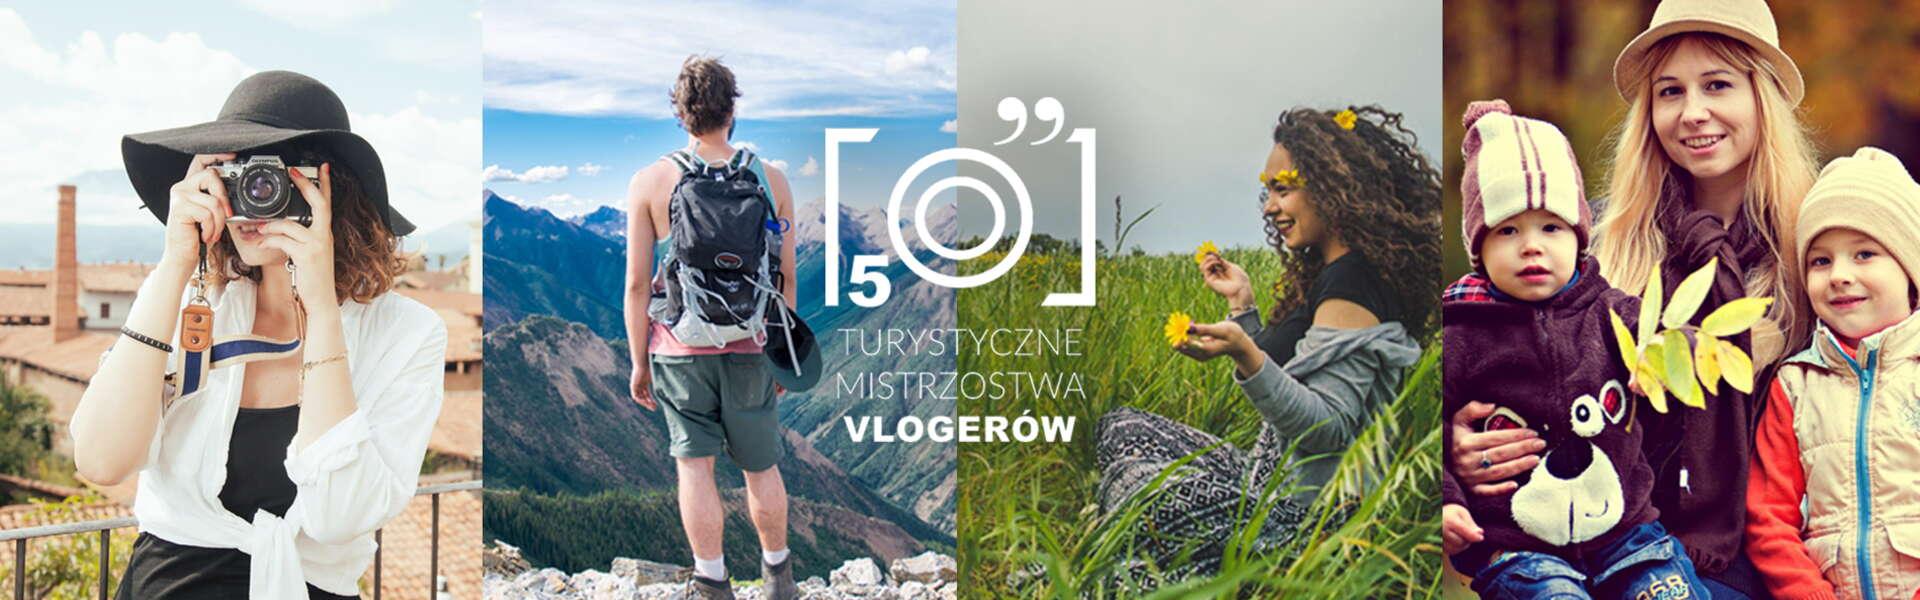 Imagen: Zagłosuj na Małopolskę - V Turystyczne Mistrzostwa Vlogerów!